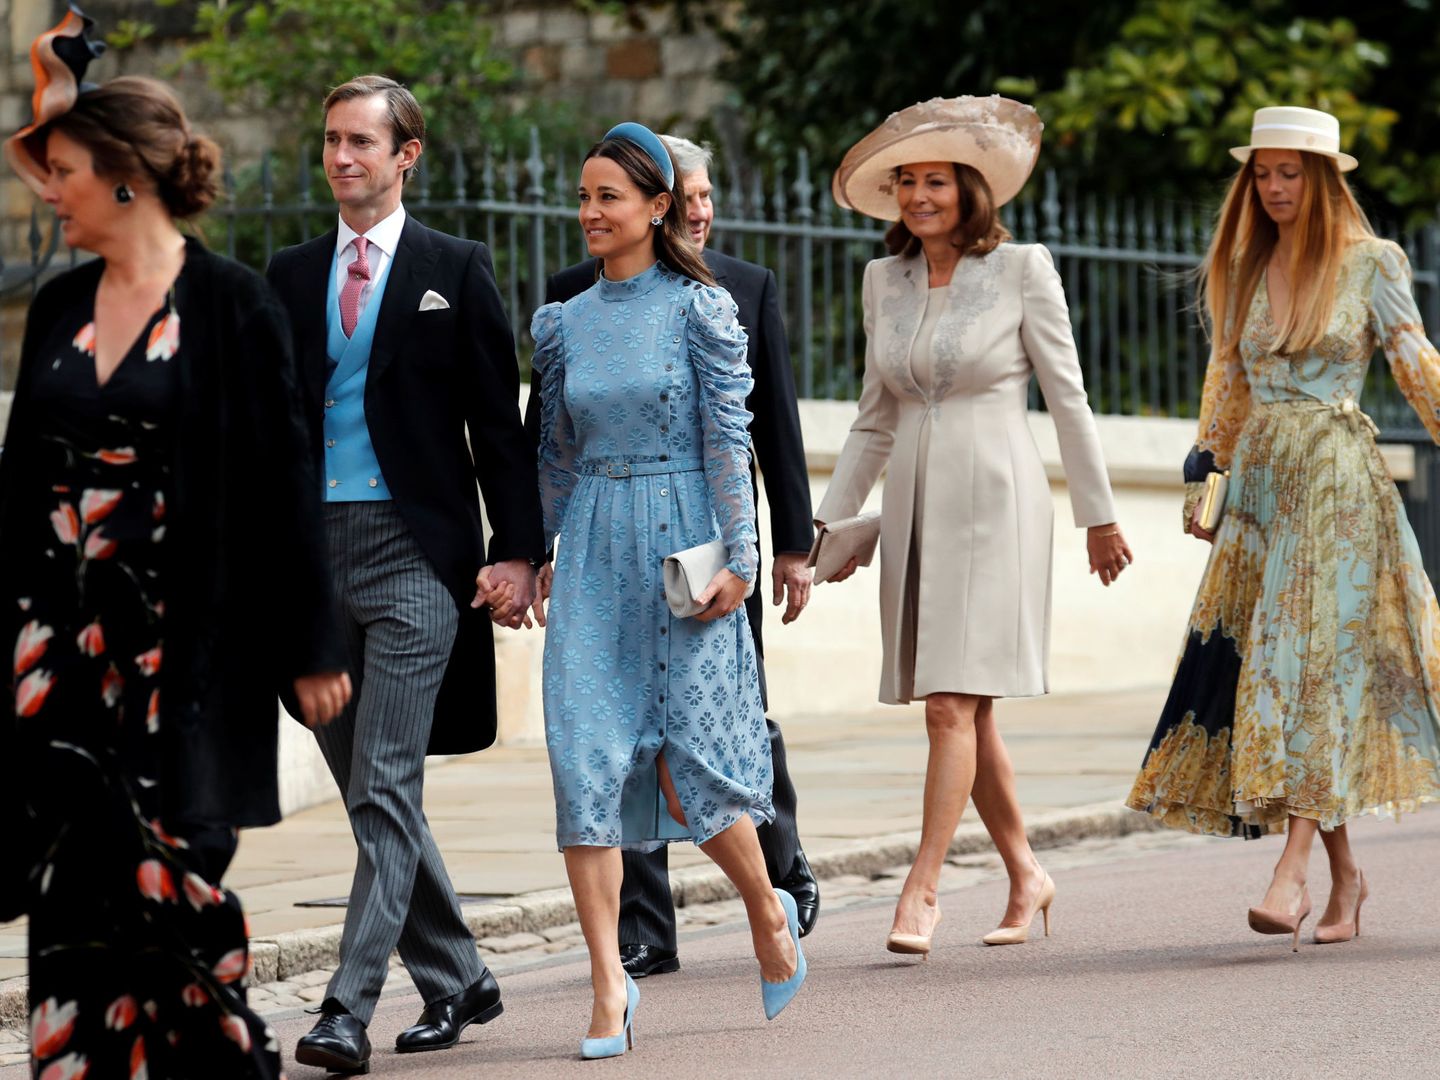 Alizee Thevenet, junto a los Middleton en la boda de Lady Grabiella. (Reuters)